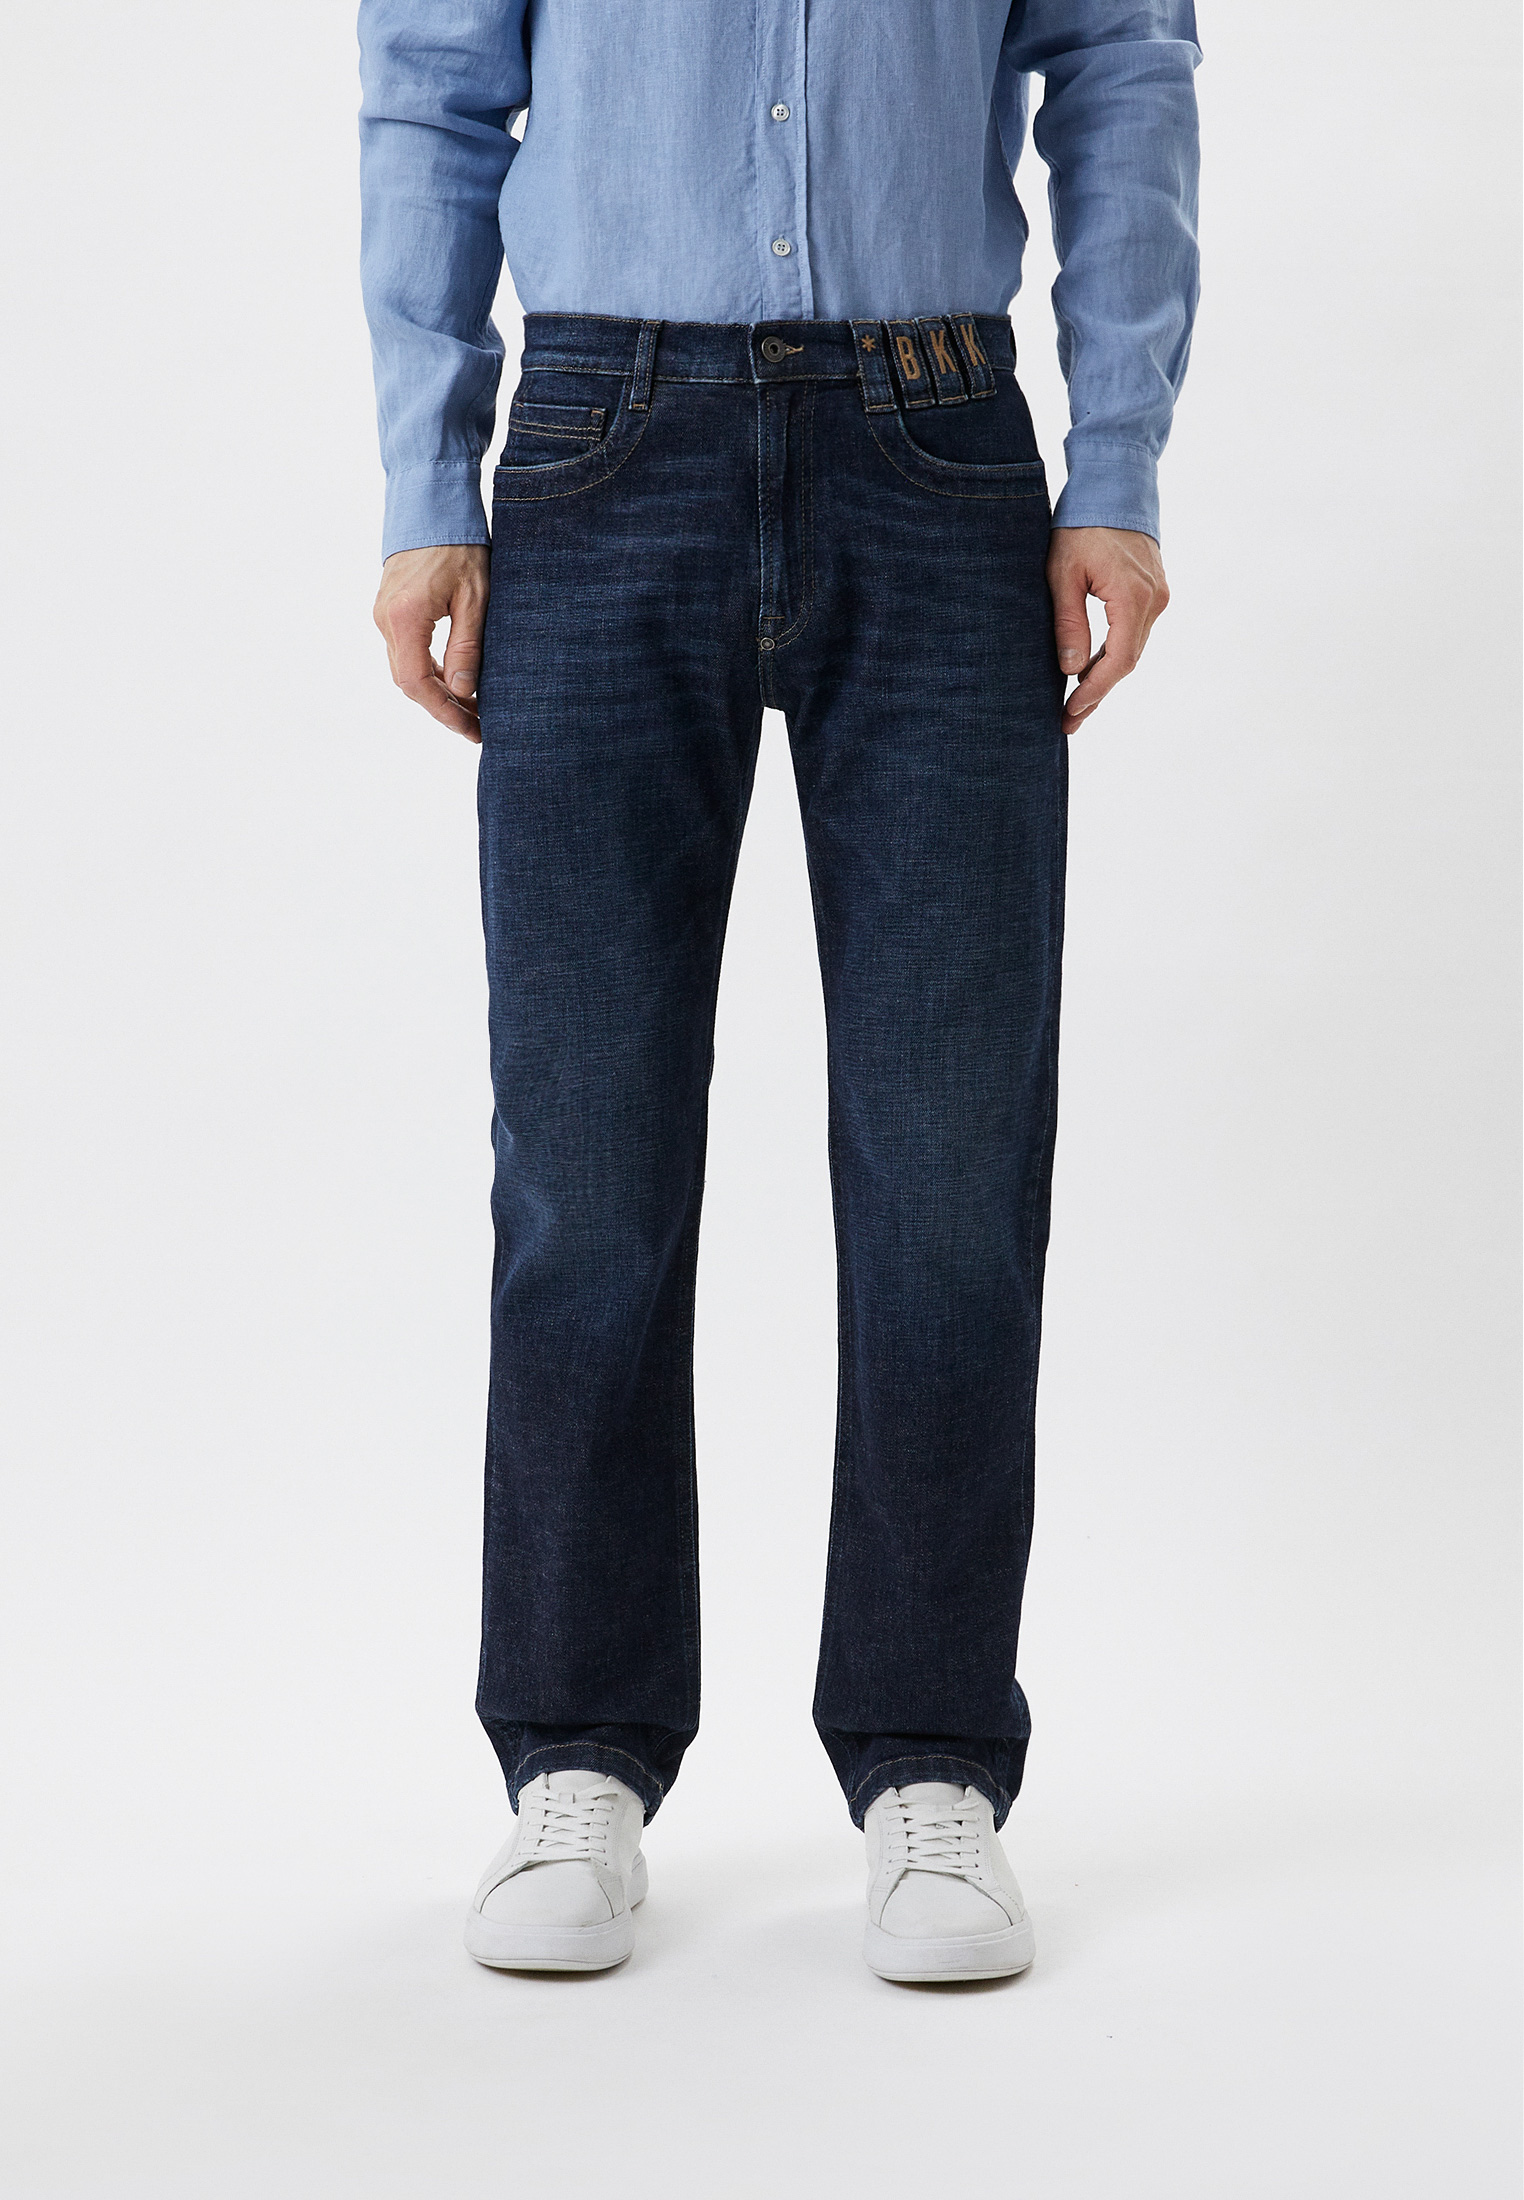 Мужские прямые джинсы Bikkembergs (Биккембергс) CQ11380S3670: изображение 1